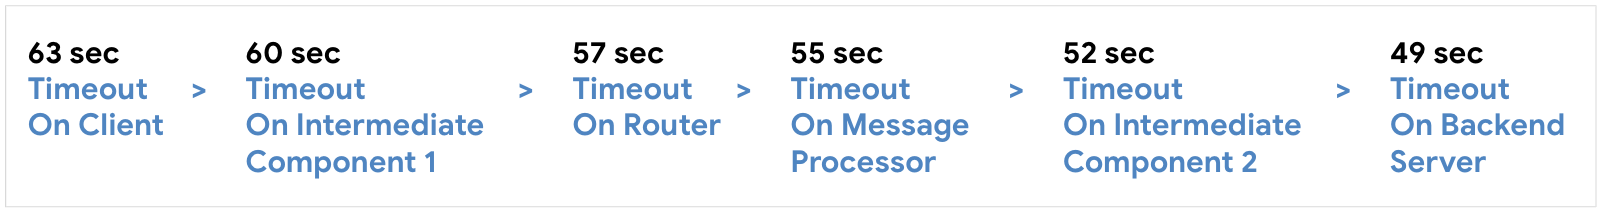 在用戶端設定 63 秒時逾時，接著在 60 秒時設定中級元件 1，接著在 57 秒時執行路由器，再於 55 秒內執行路由器 2，接著在 52 秒時設定中繼元件 2，接著在 59 秒時執行後端伺服器